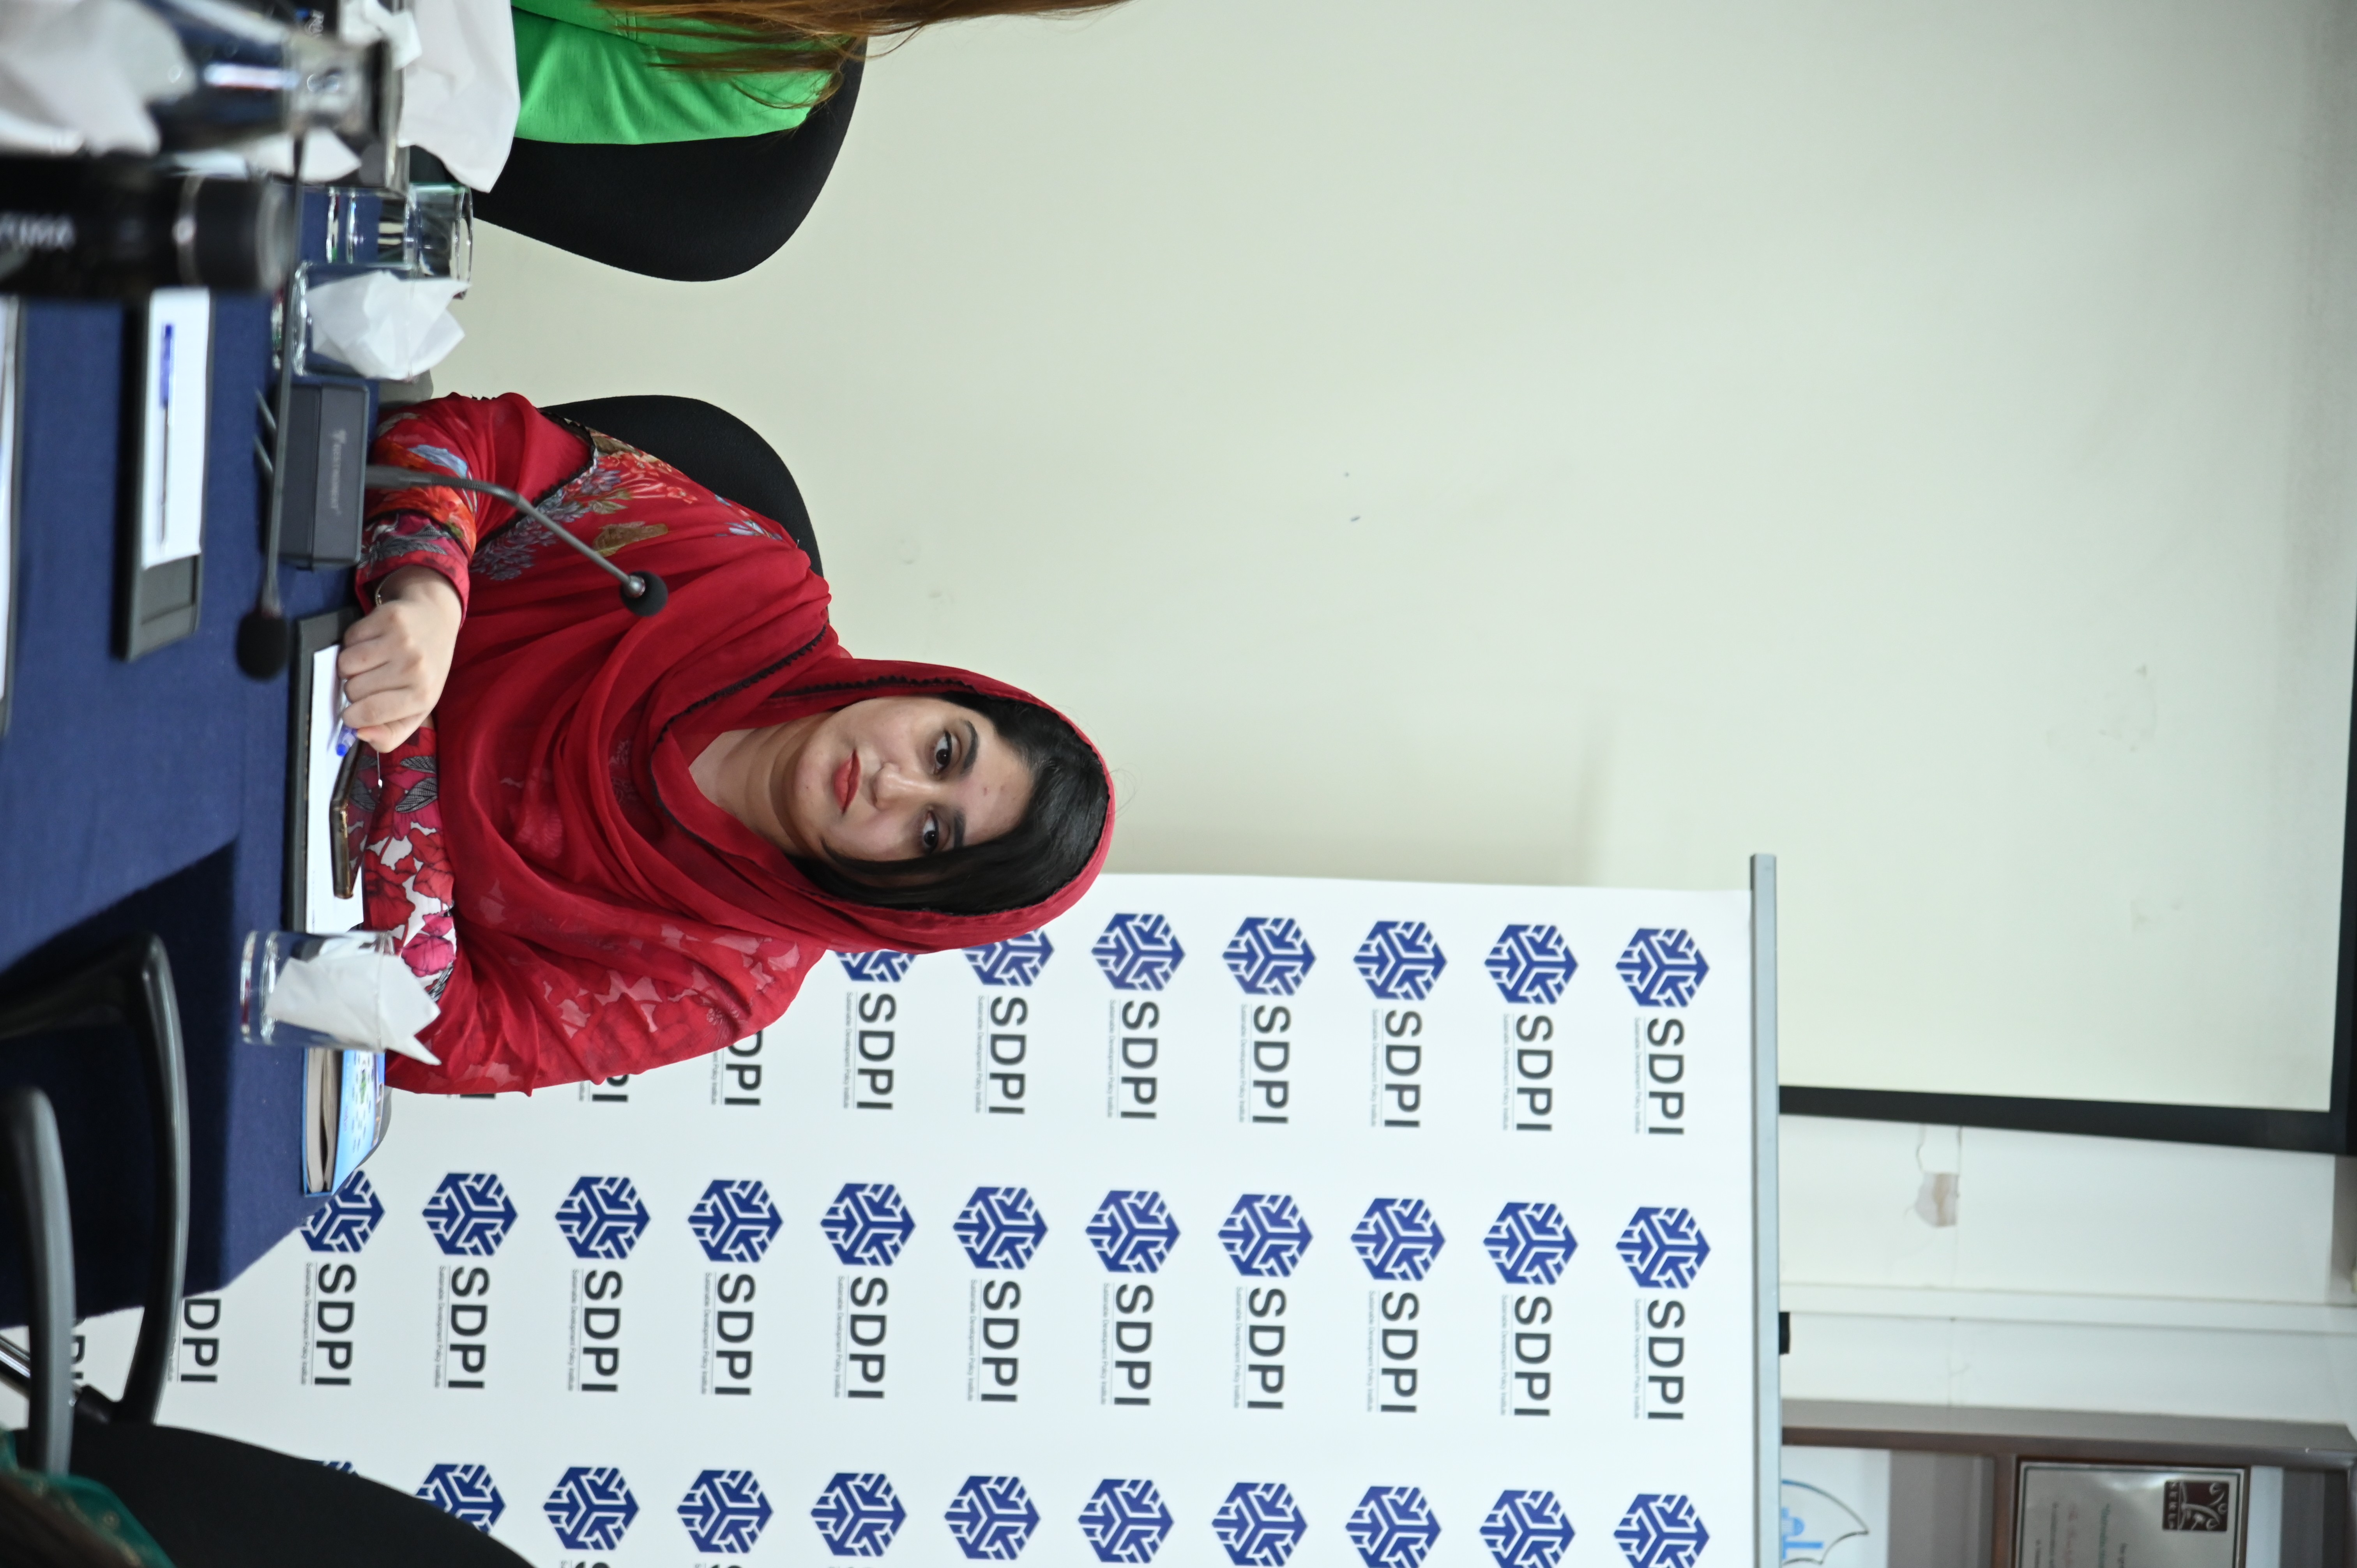 Ms Zainab Naeem in the event regarding CPEC